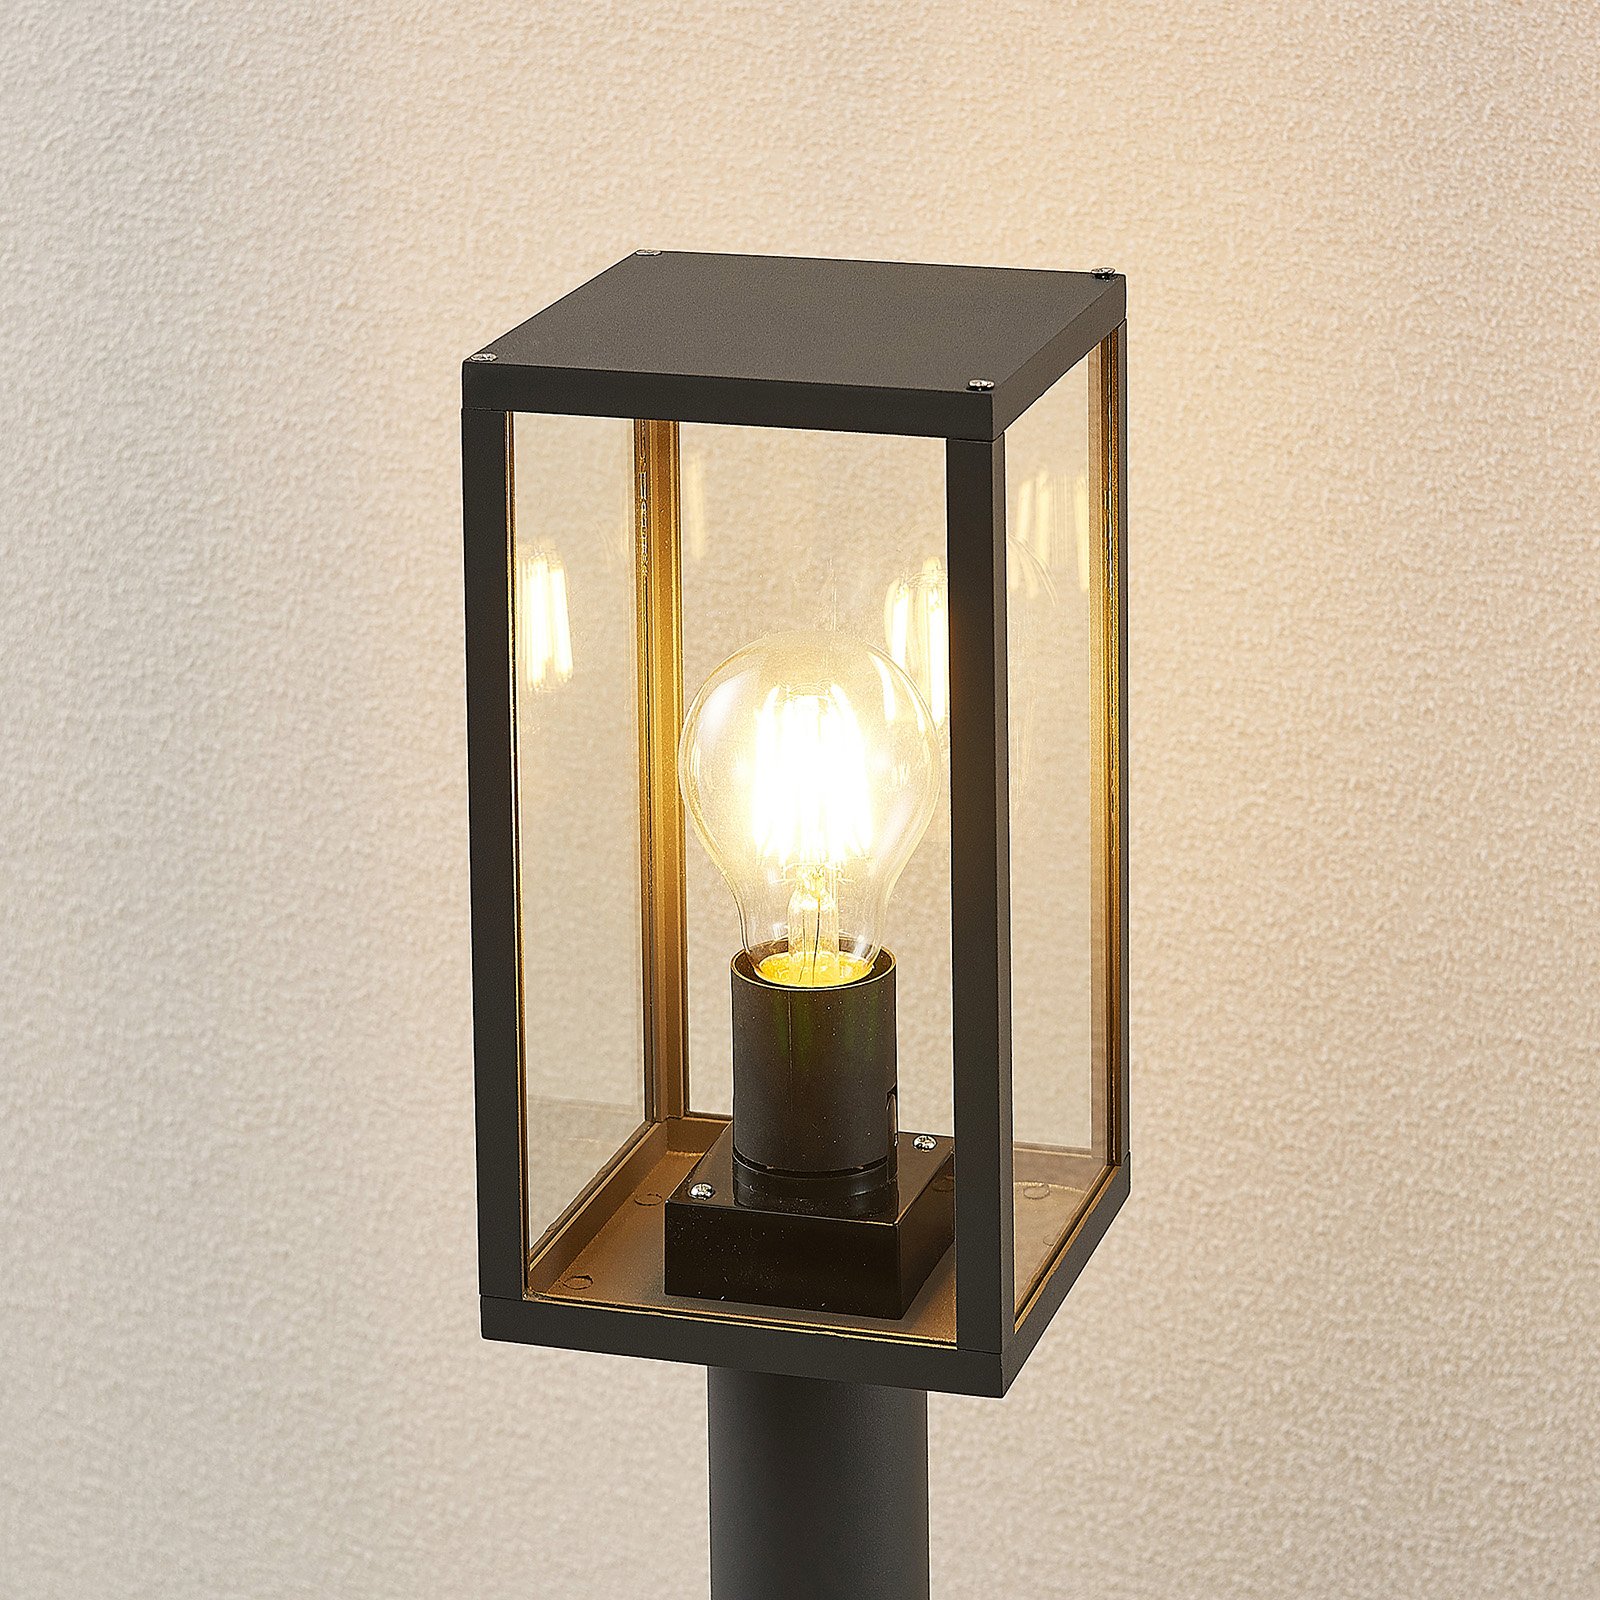 Lindby Filimon veilampe, mørkegrå, E27